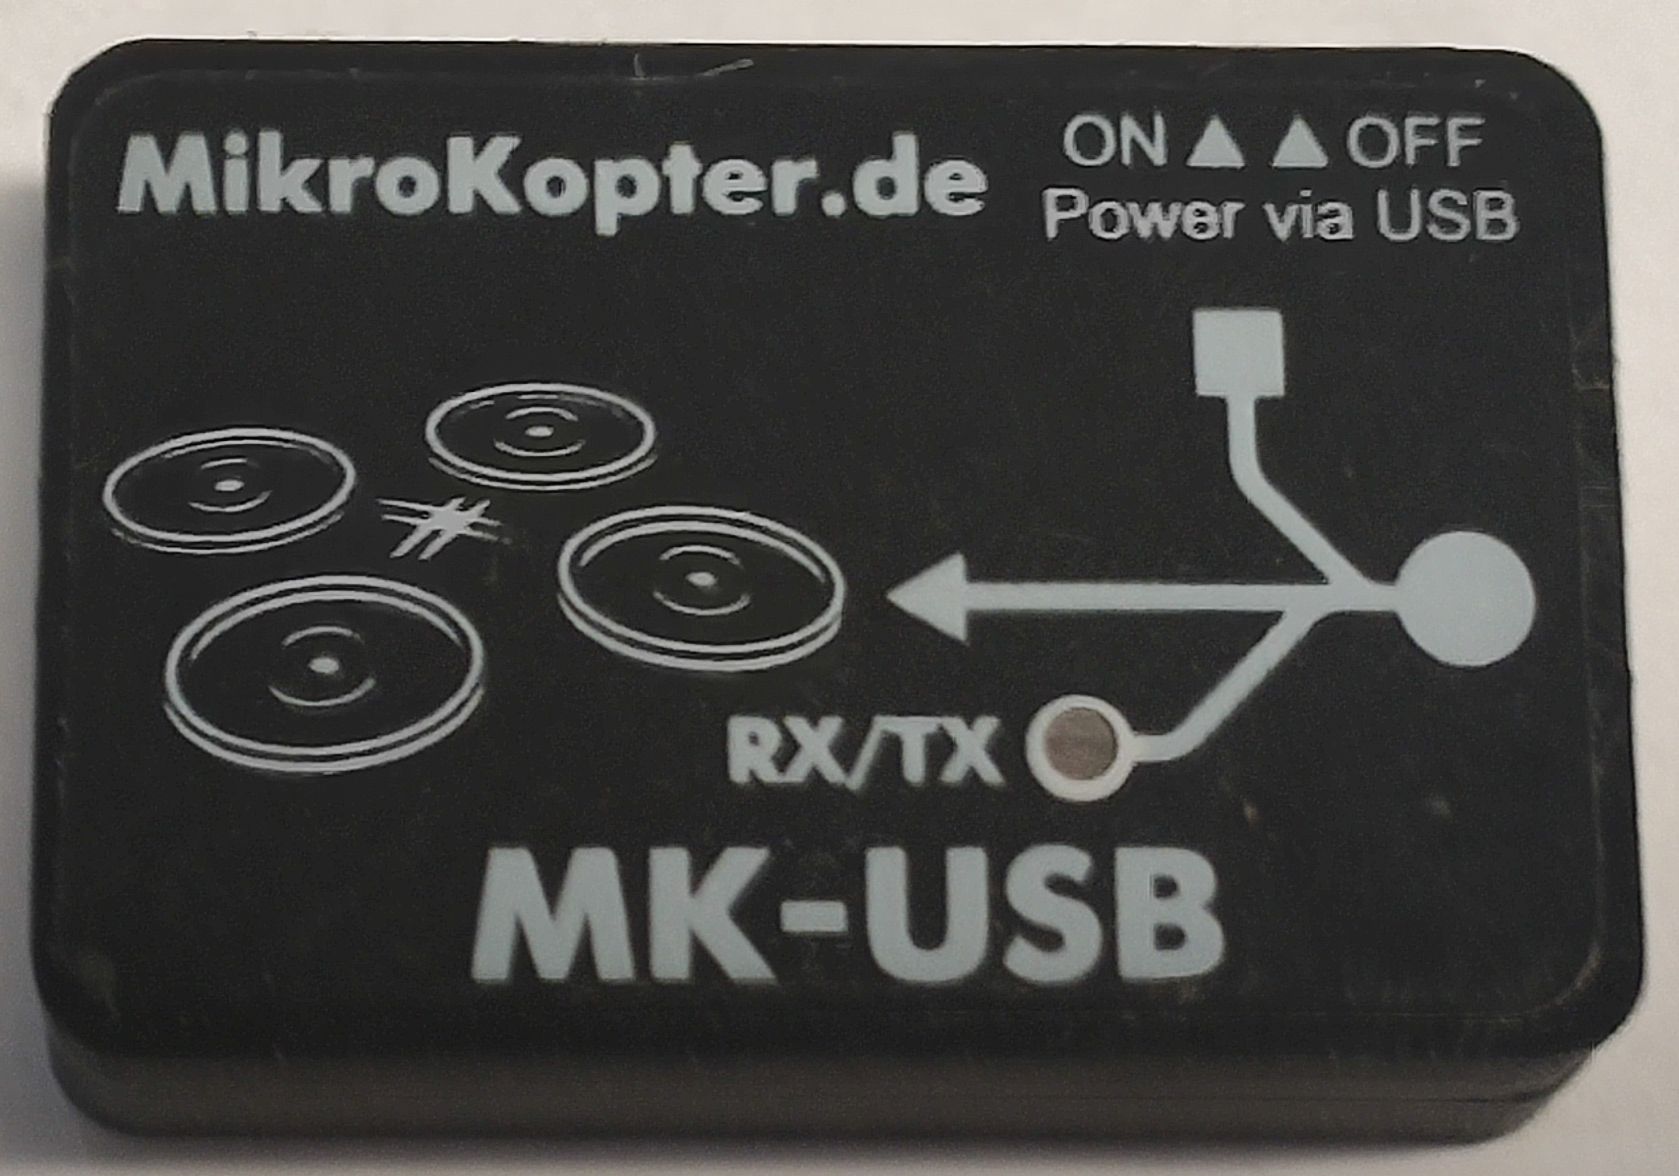 MK-USB im Gehuse - zum Schlieen ins Bild klicken